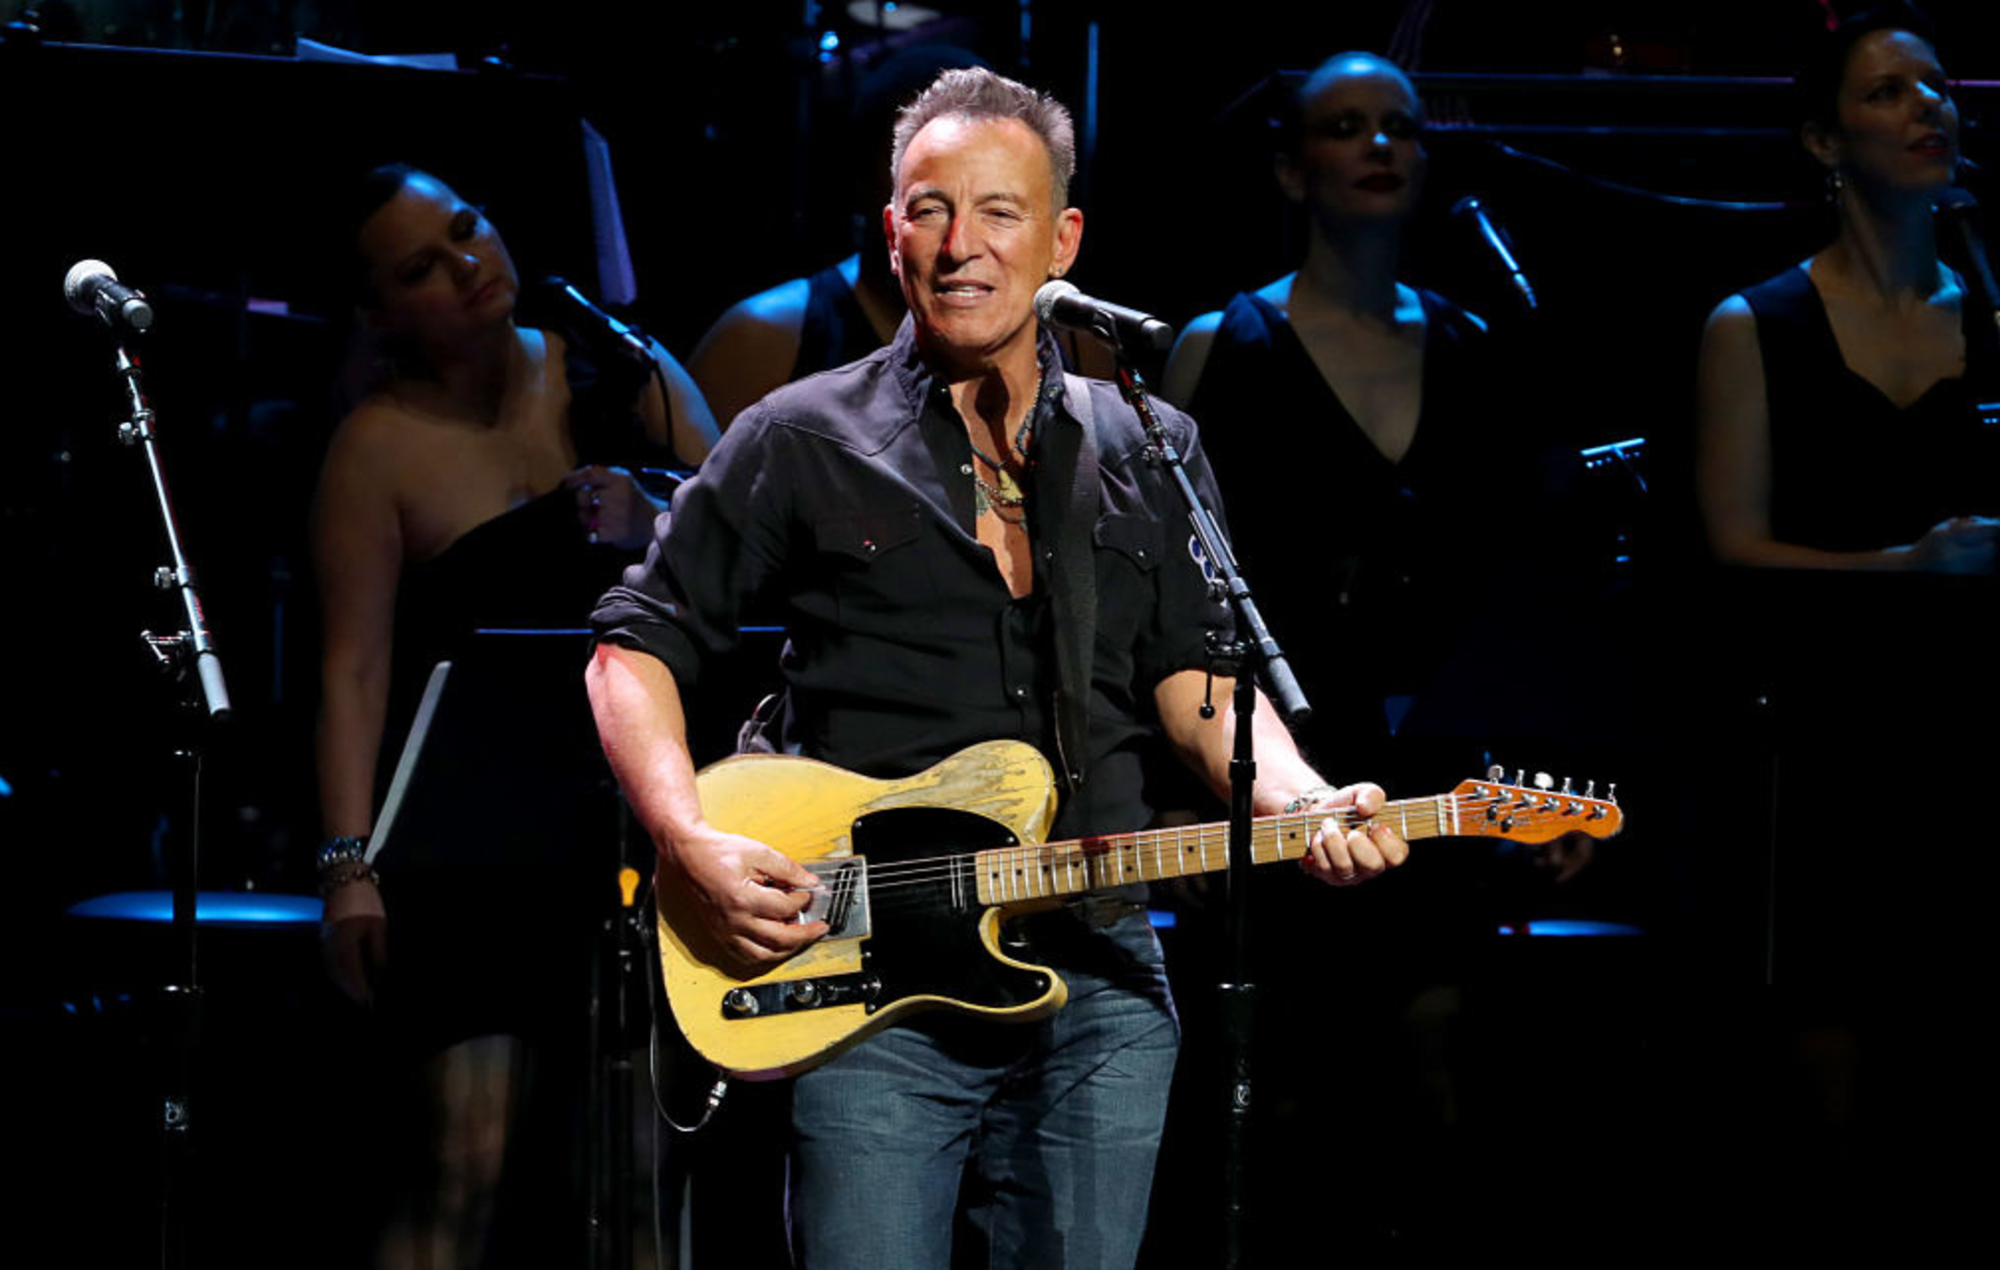 Jornal da Franca - Bruce Springsteen vende catálogo de músicas por US$ 500  milhões de dólares - Jornal da Franca